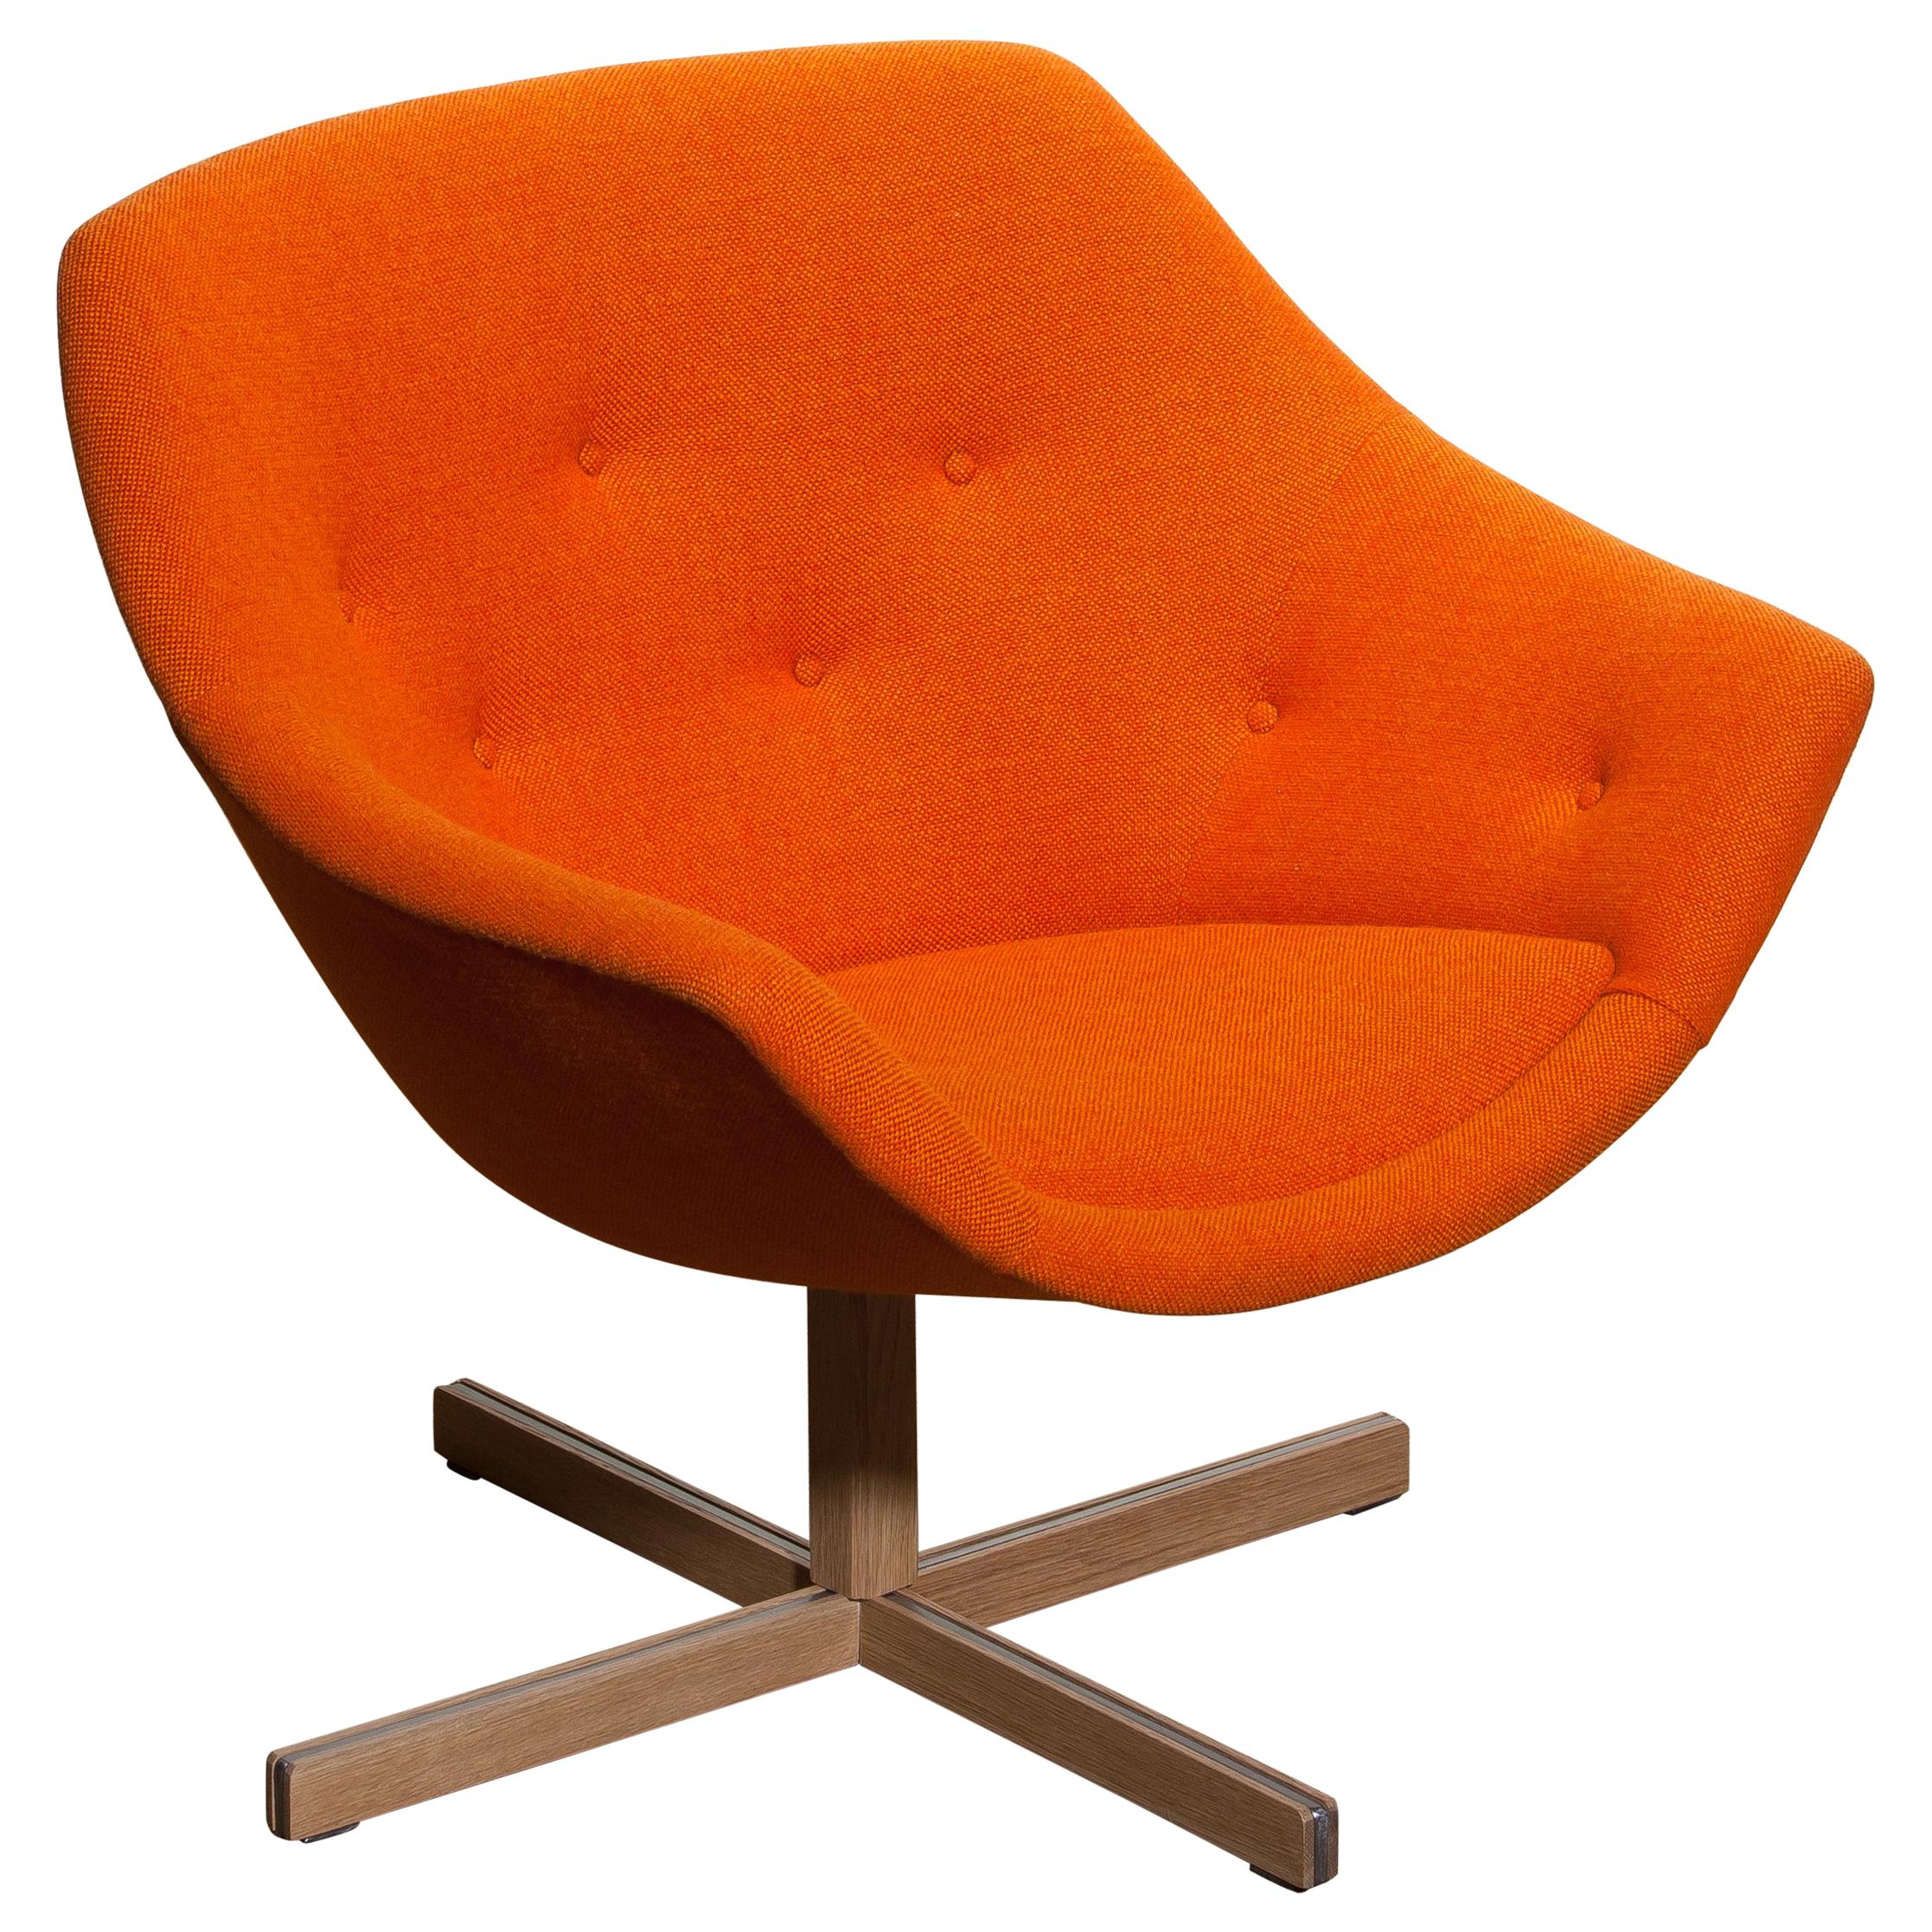 Fantastischer Mandariini-Drehstuhl von Carl Gustaf Hiort für Puunveisto Oy, Holzarbeiten Ltd. Dieser Stuhl ist mit dem geknöpften orangefarbenen Stoff 'Hallingdal' von Kvadrat, entworfen von Nanna Ditzel, auf einem Drehgestell aus Eiche